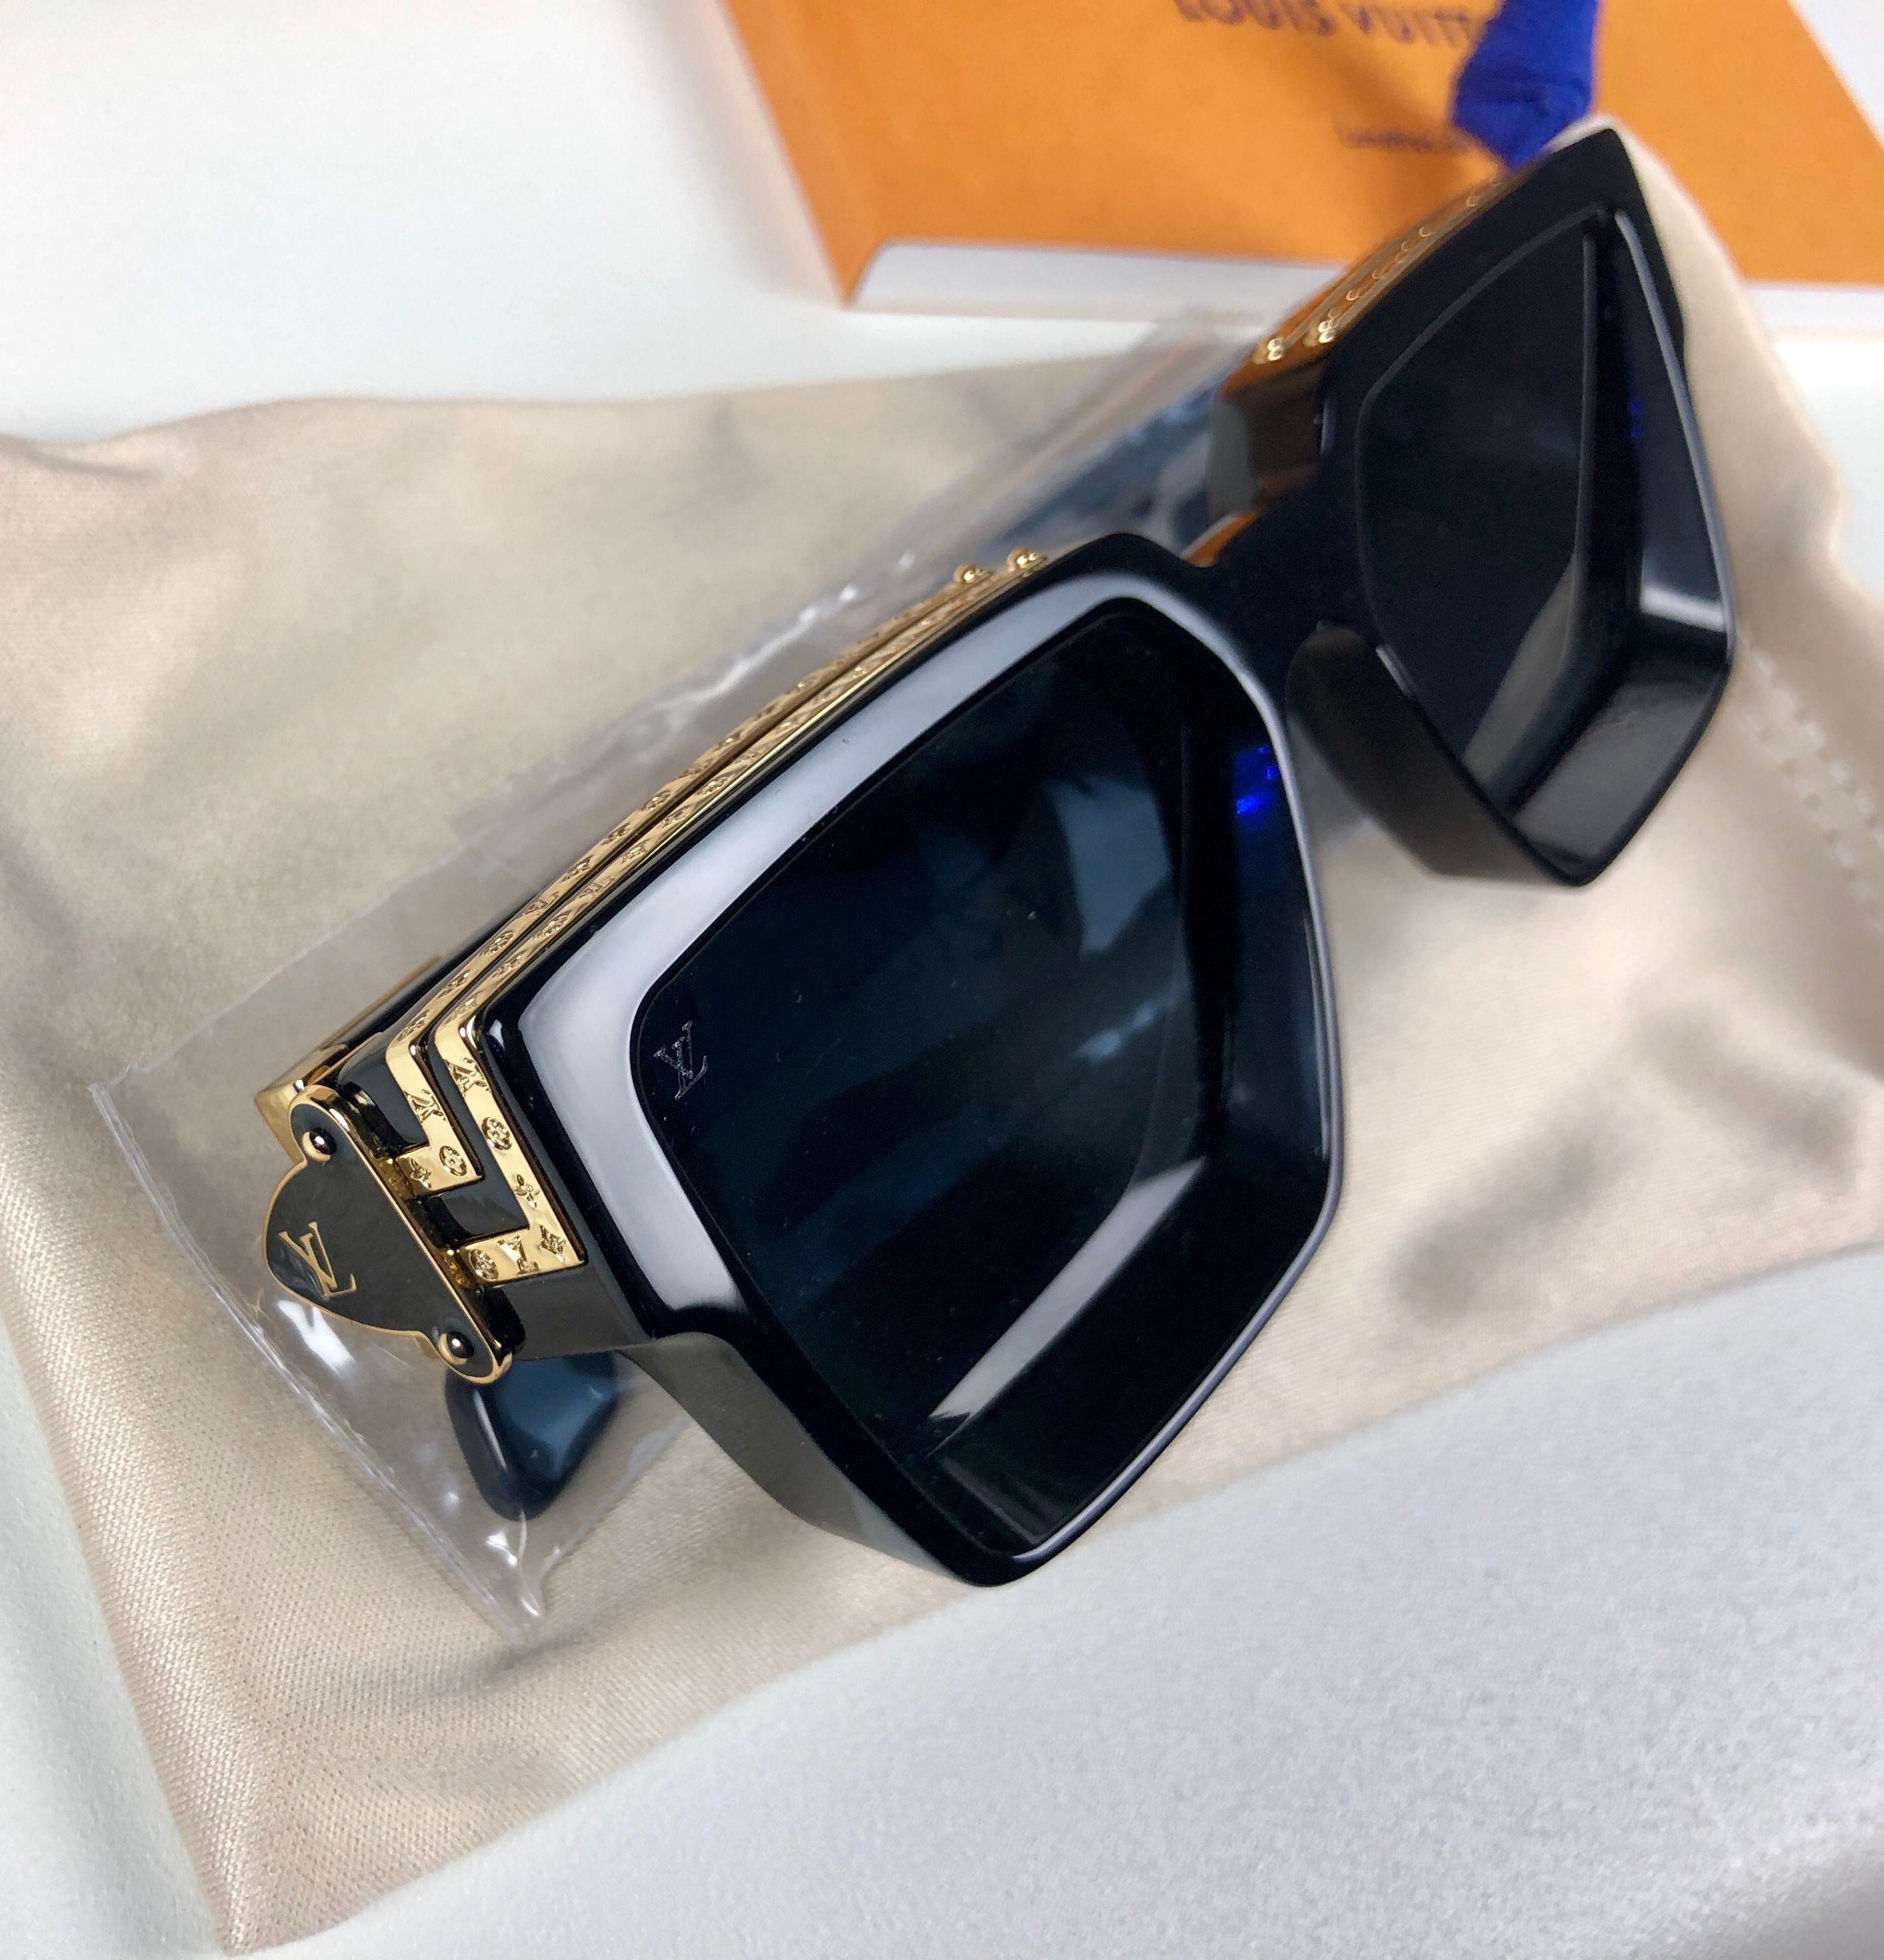 Louis Vuitton 1.1 Millionaires Virgil Abloh SS19 Sunglasses Review  #LVMENSS19 